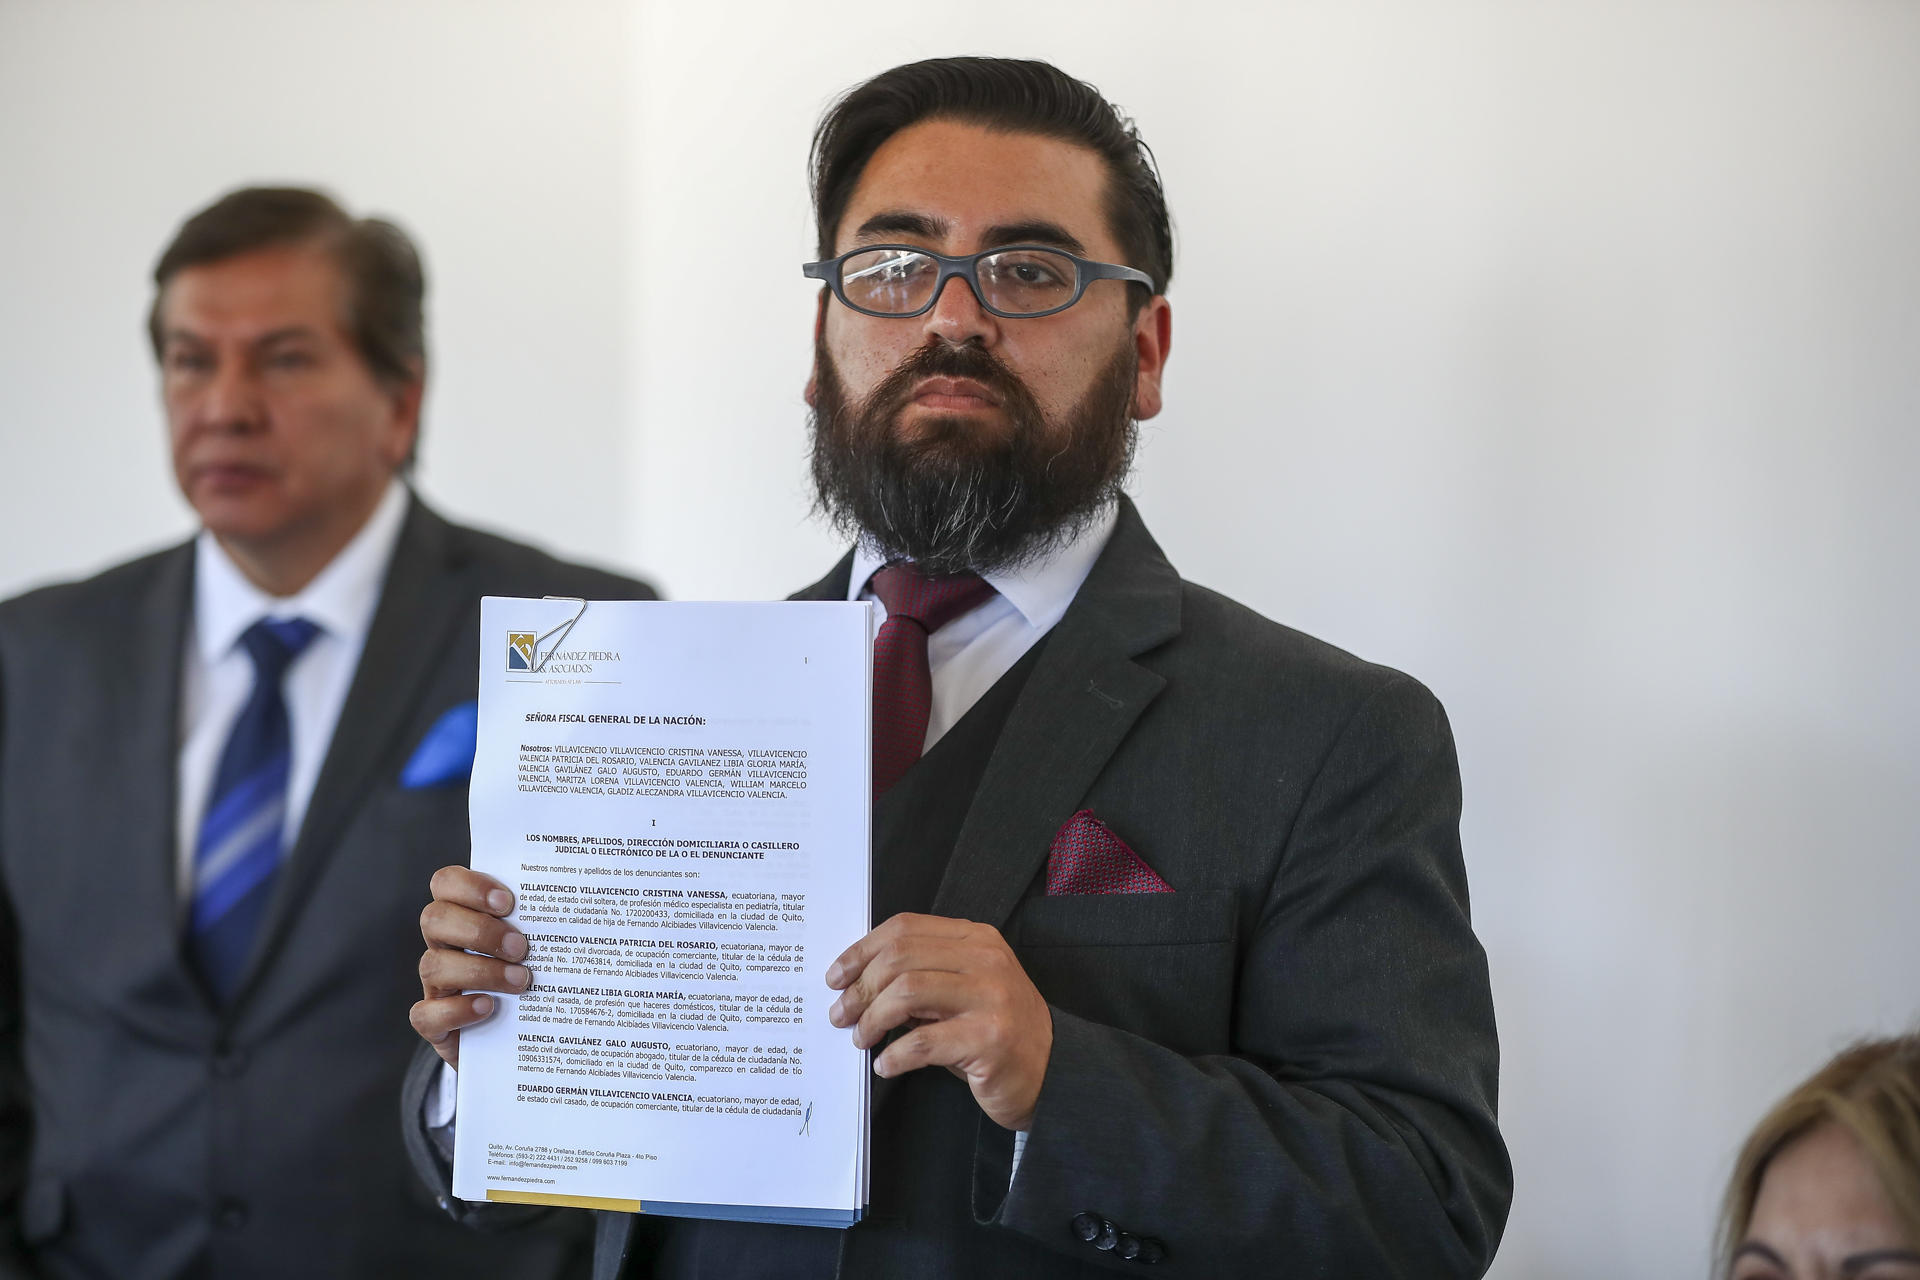 El abogado Marco Ayulema muestra un documento durante una rueda de prensa hoy, en Quito (Ecuador). EFE/José Jácome